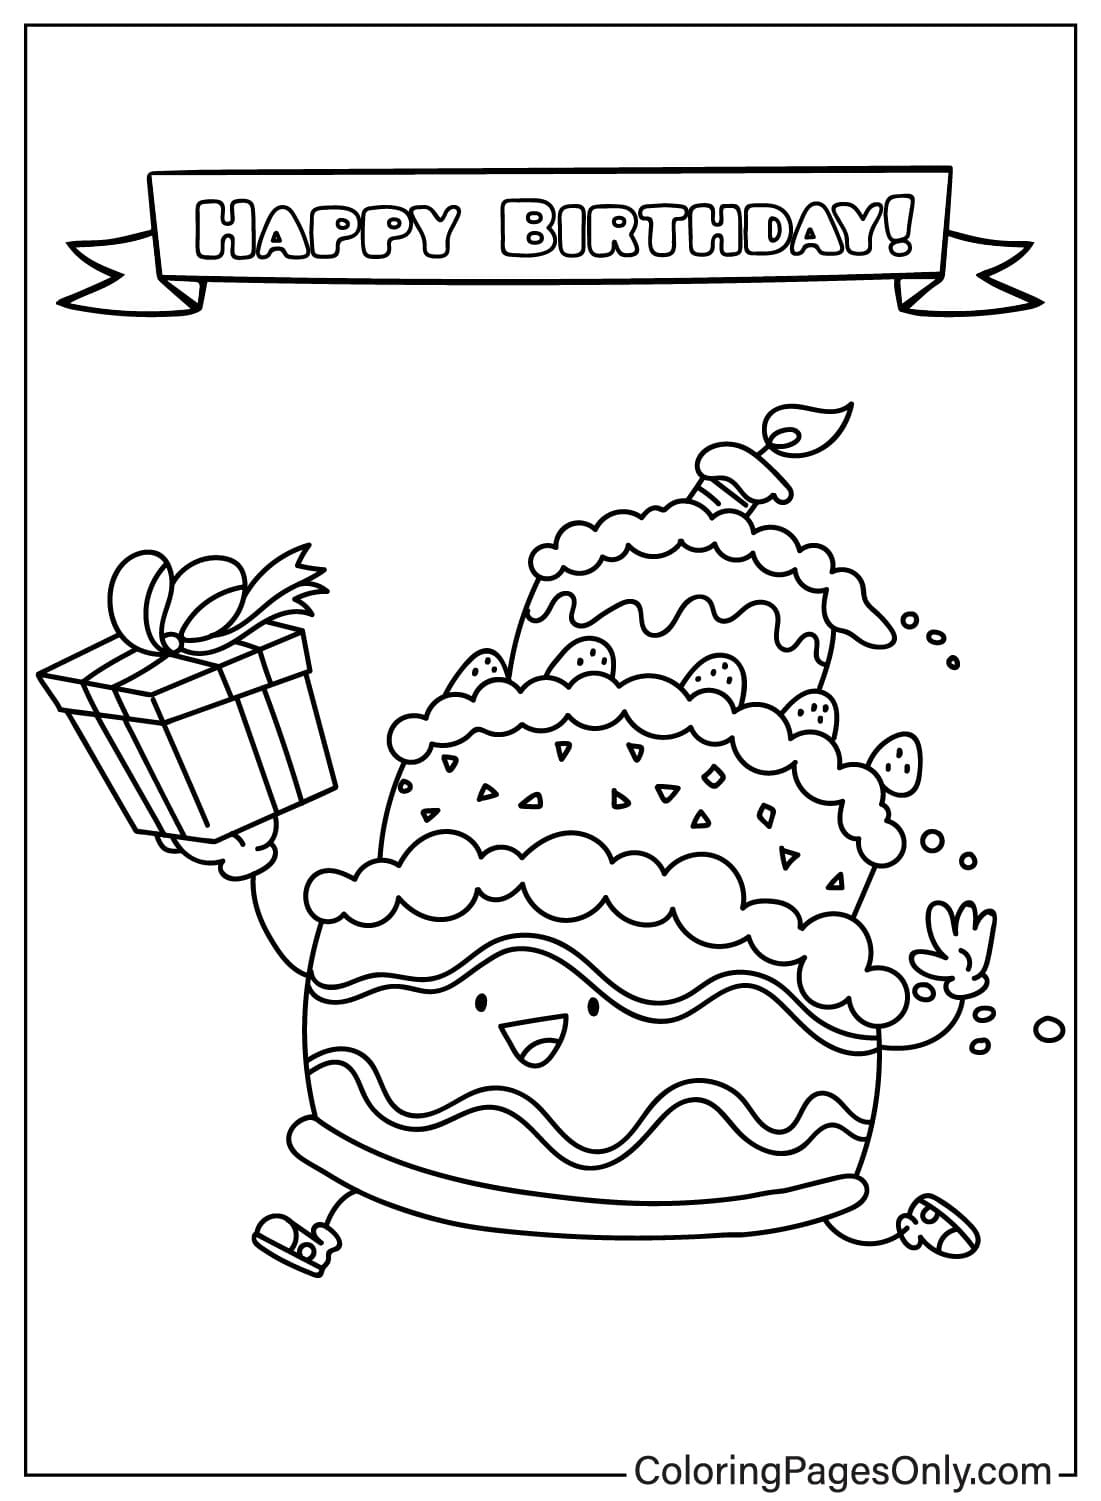 Милая раскраска торт ко дню рождения от торта ко дню рождения